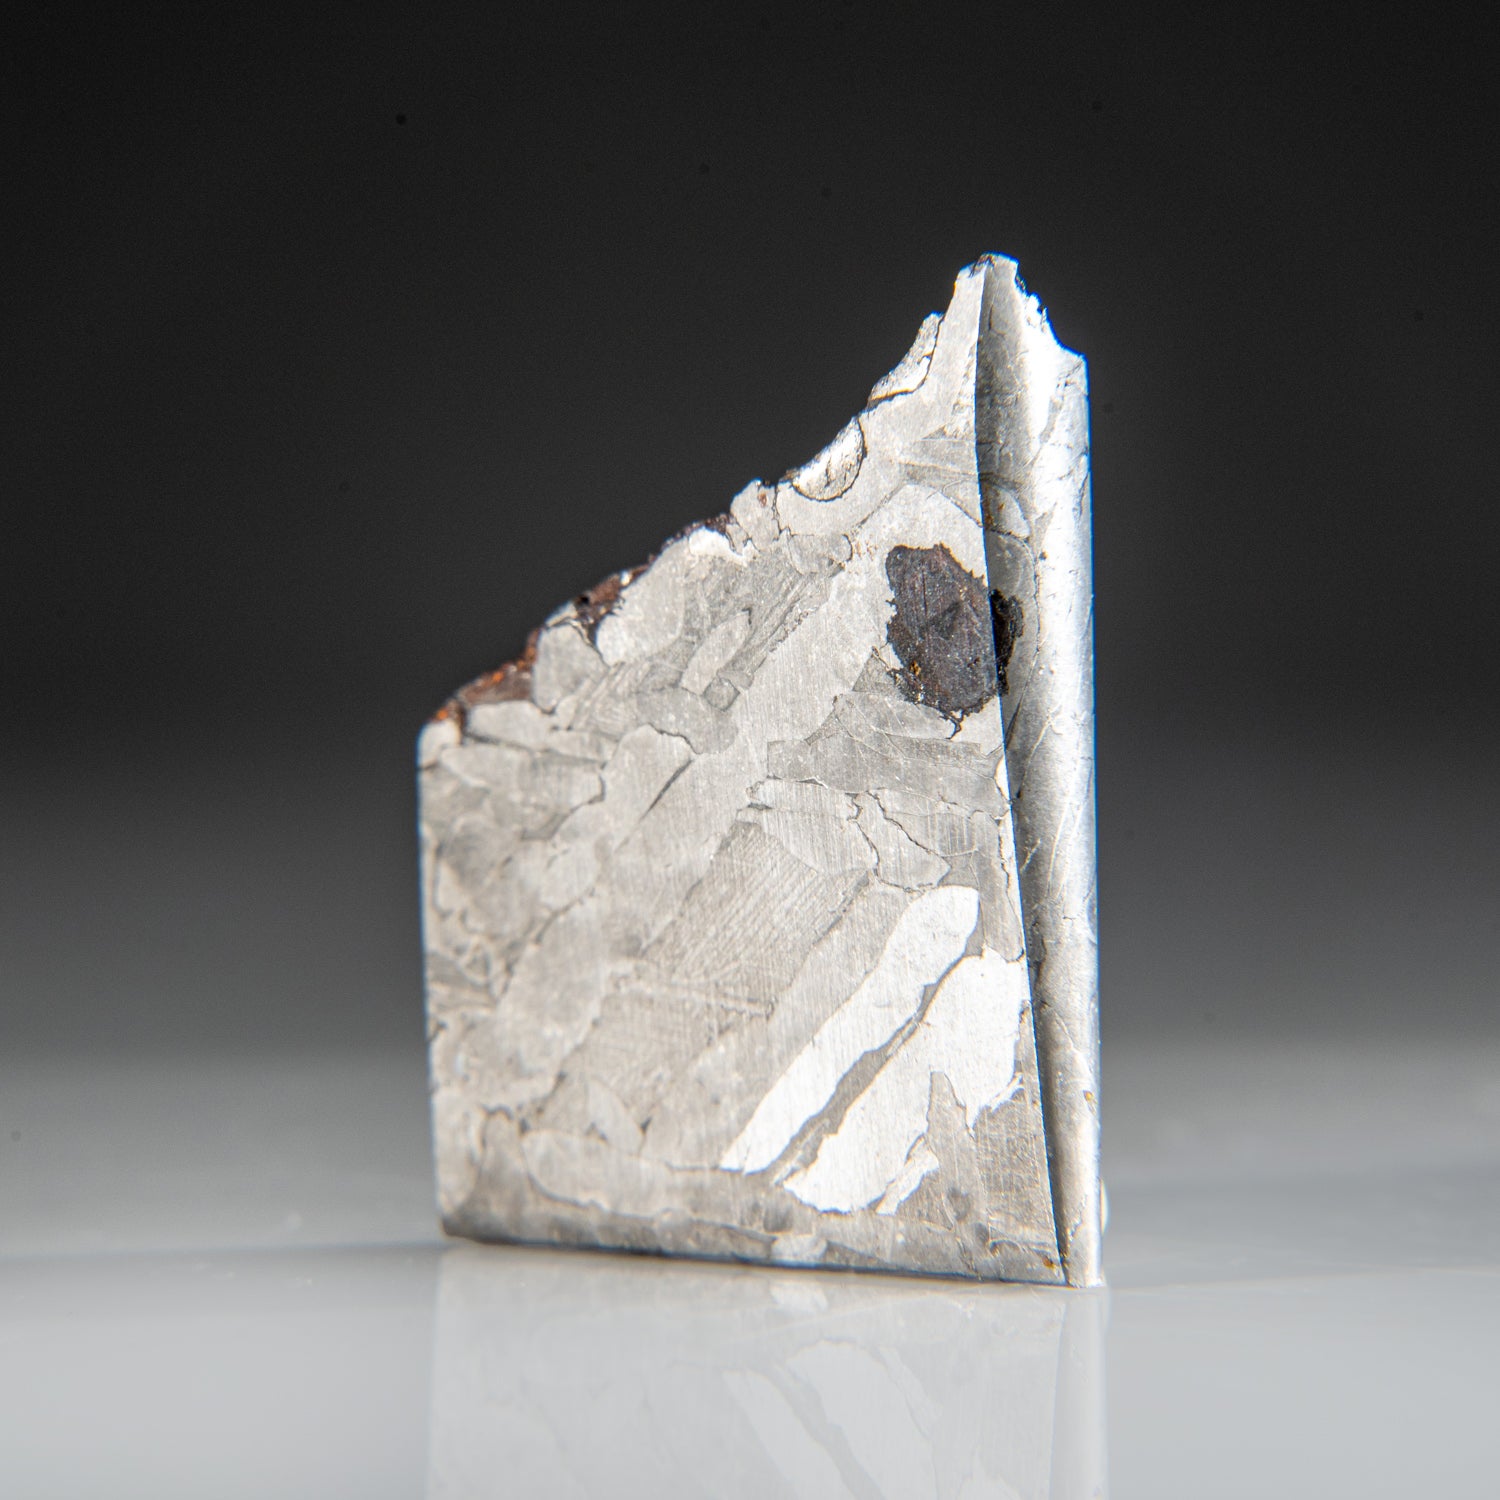 Genuine Muonionalusta Meteorite Slice (35.9 grams)